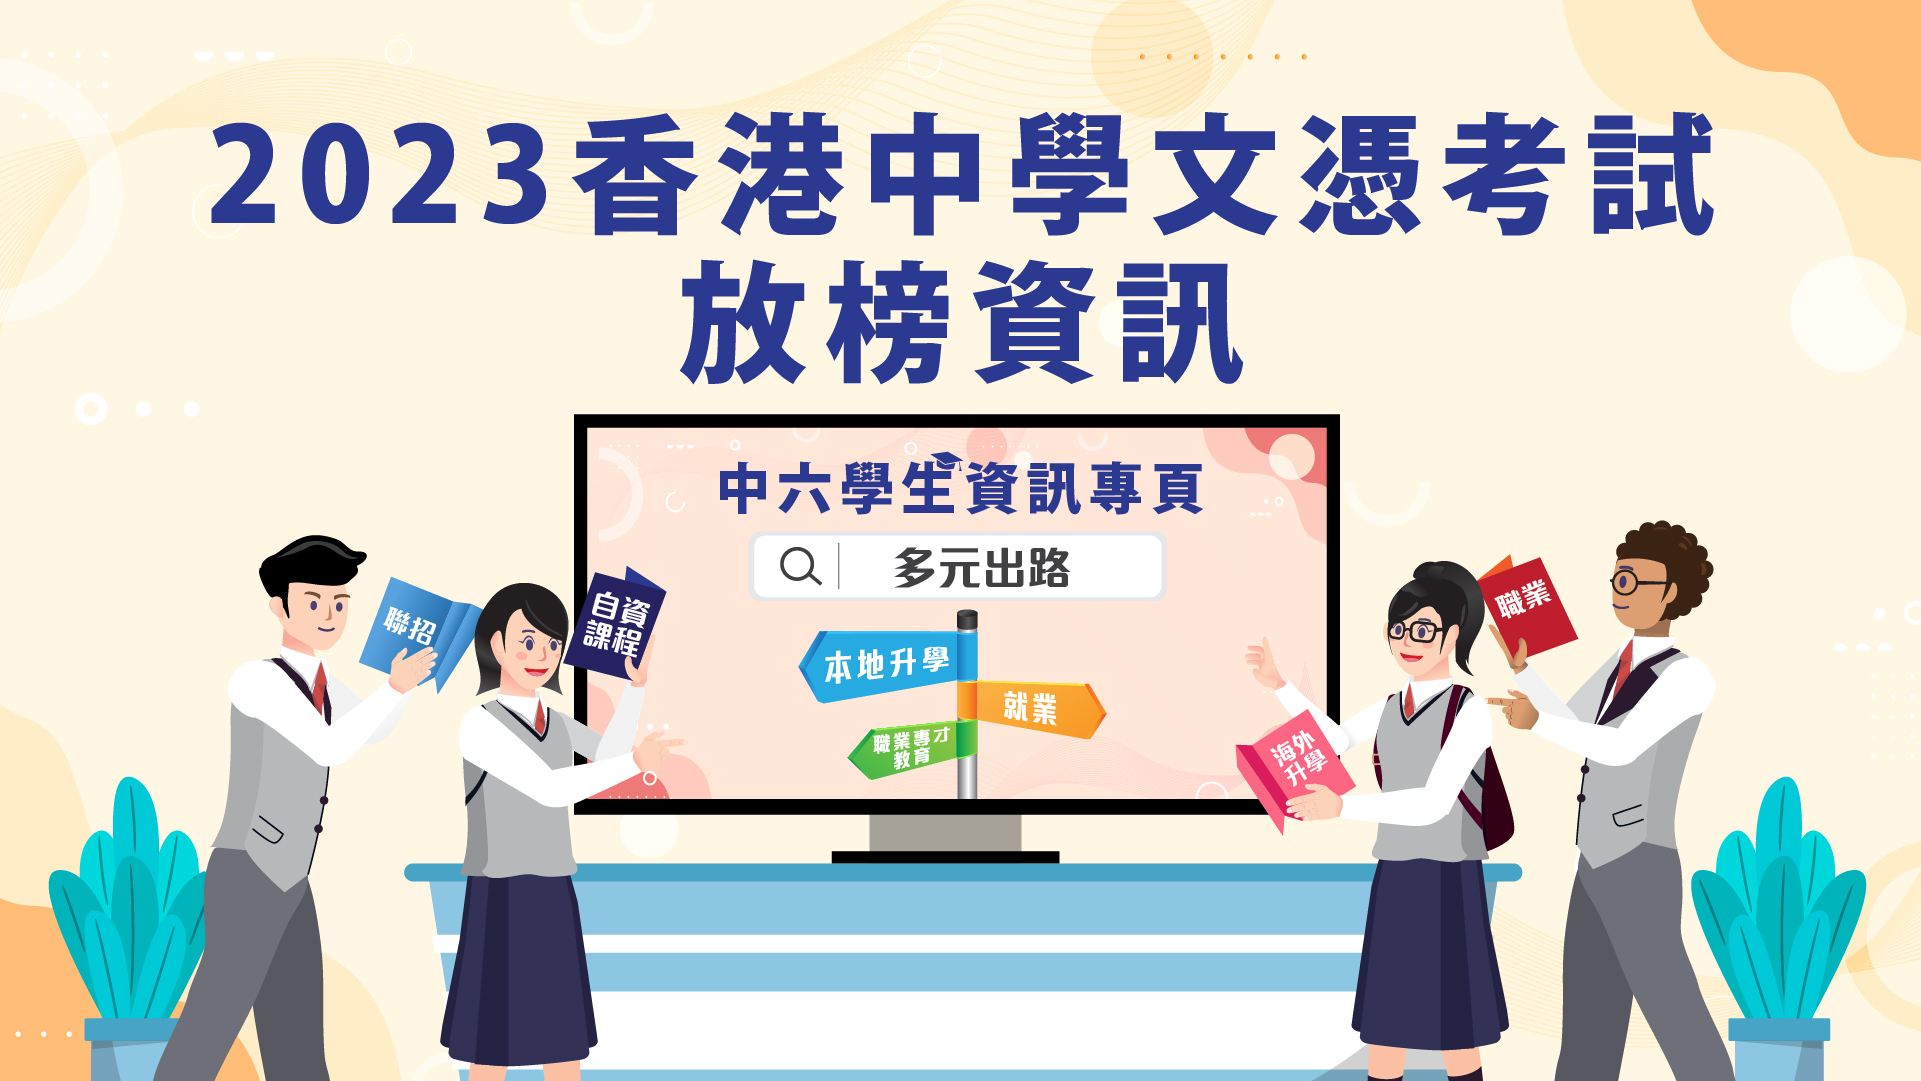 2023 香港中學文憑考試放榜資訊